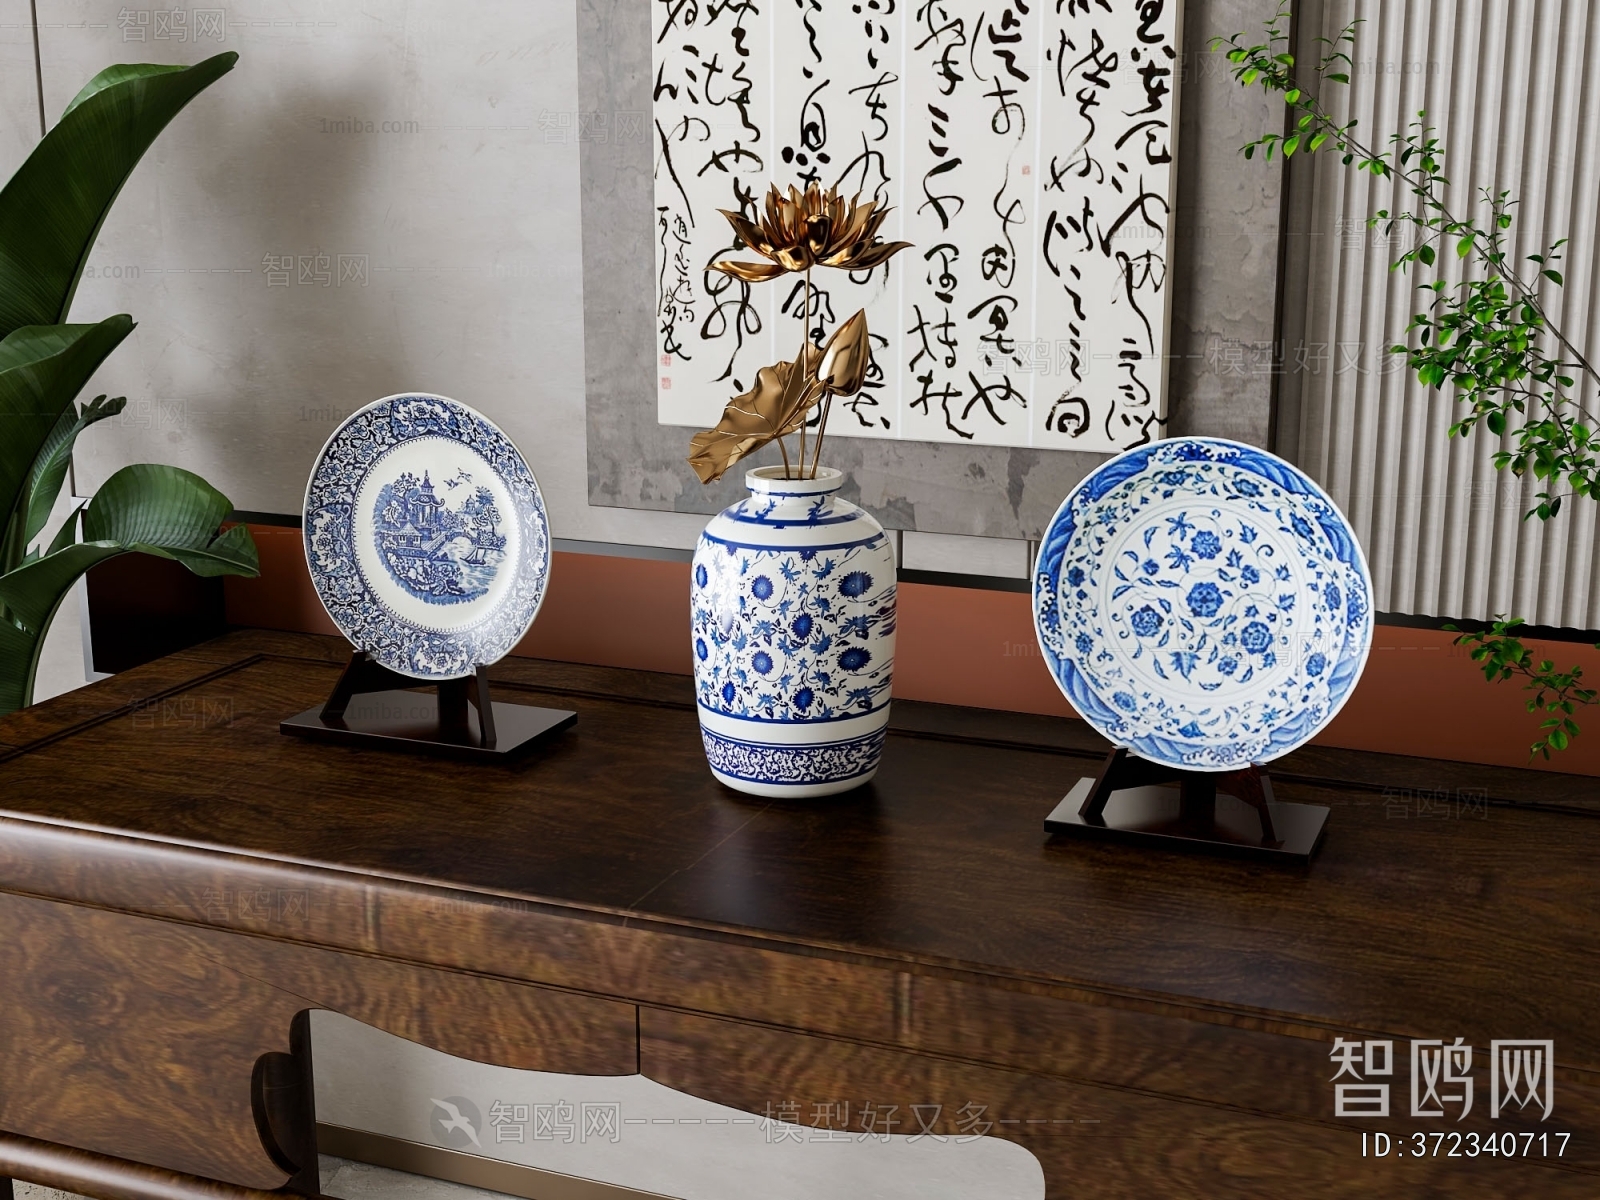 新中式青花瓷陶瓷摆件组合